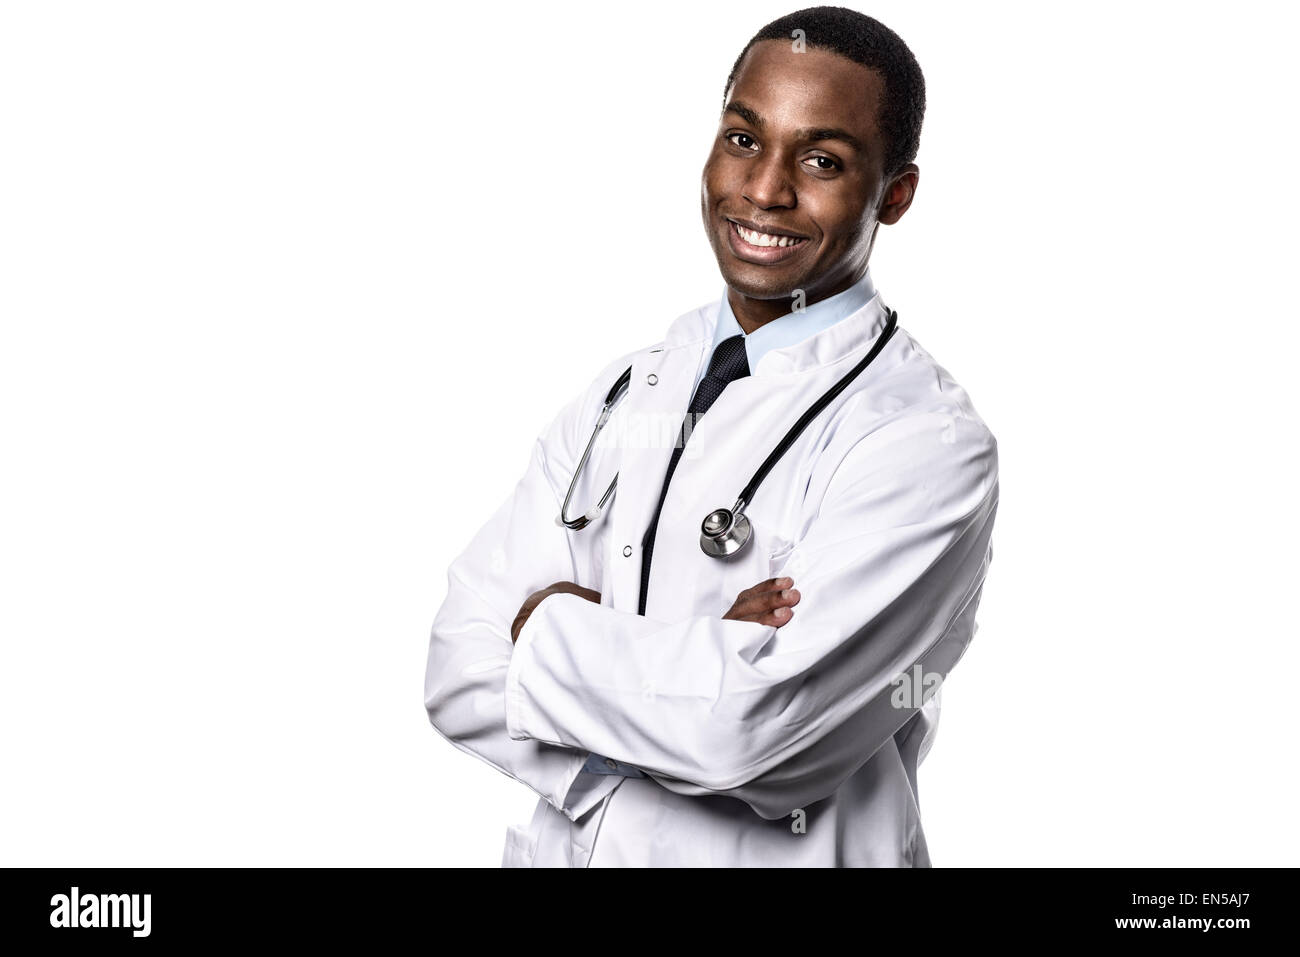 Confiant attrayant de l'Afrique de l'homme médecin vêtu d'un sarrau blanc stéthoscope et regardant la caméra avec une expression heureuse Banque D'Images